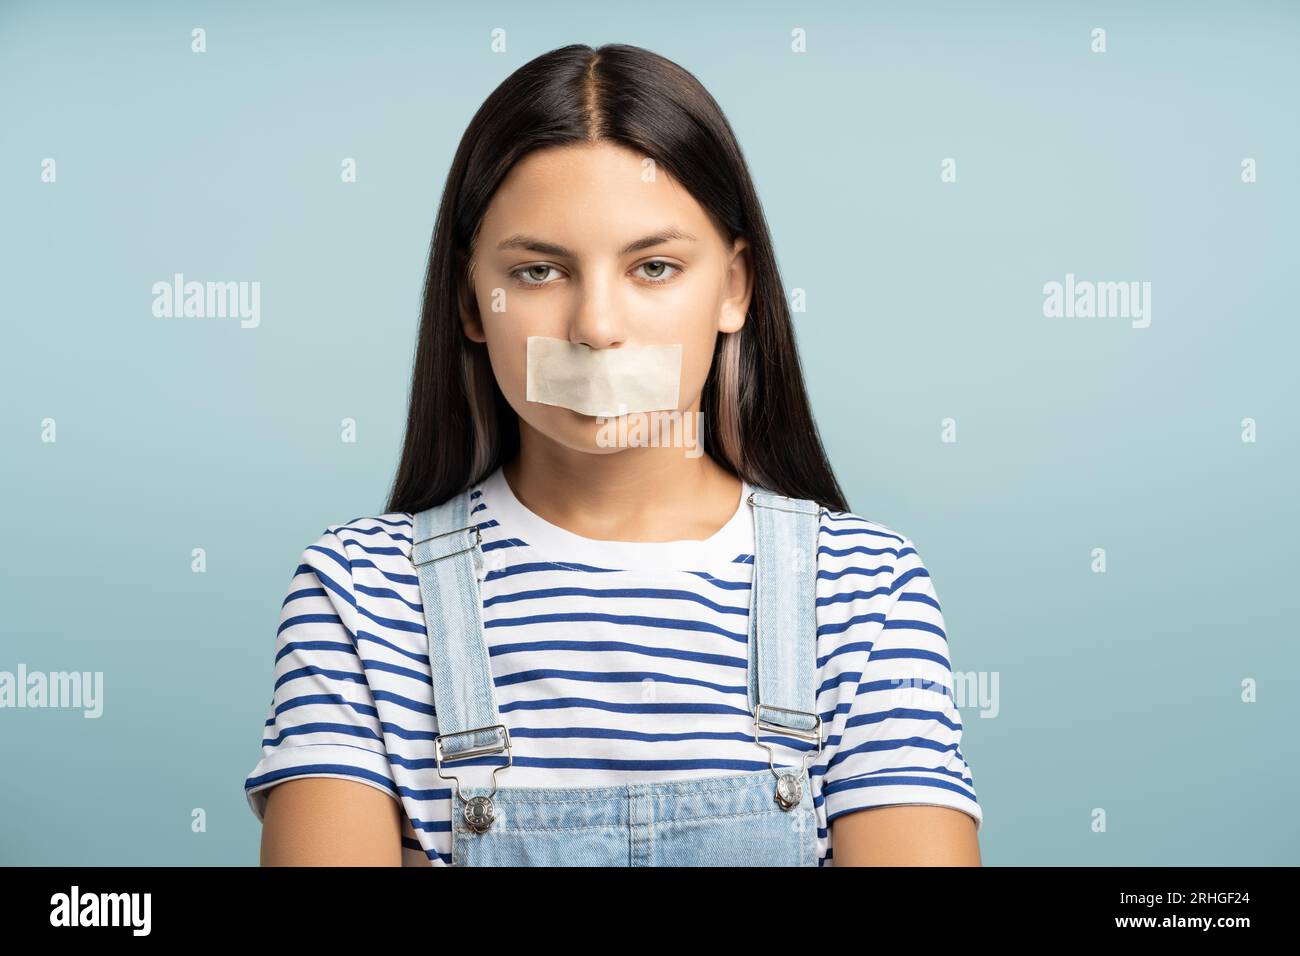 Adolescente triste avec la bouche tapée, faisant le silence, la censure. Restriction de la liberté d'expression. Banque D'Images